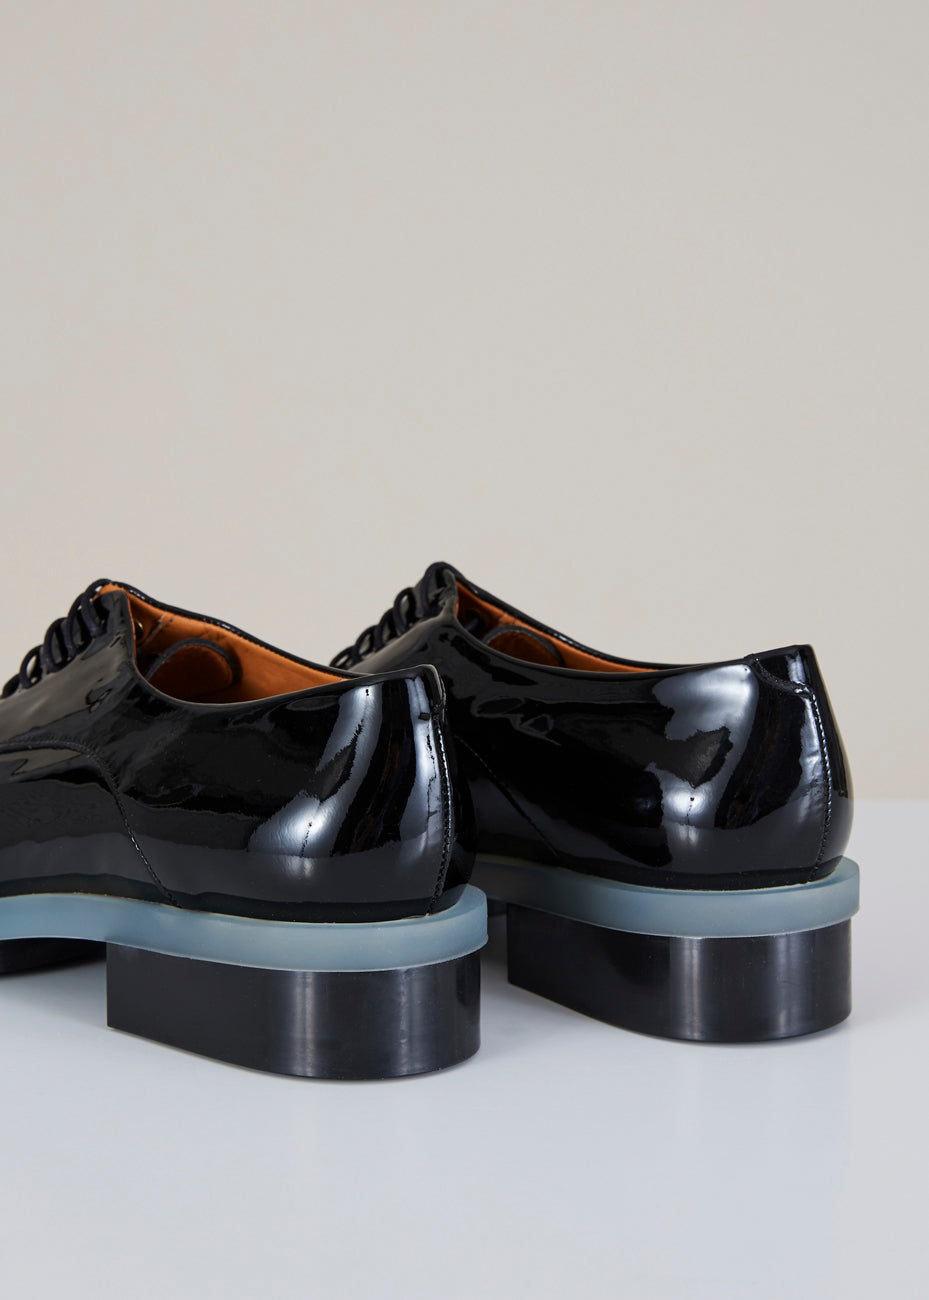 clergerie shoes sale